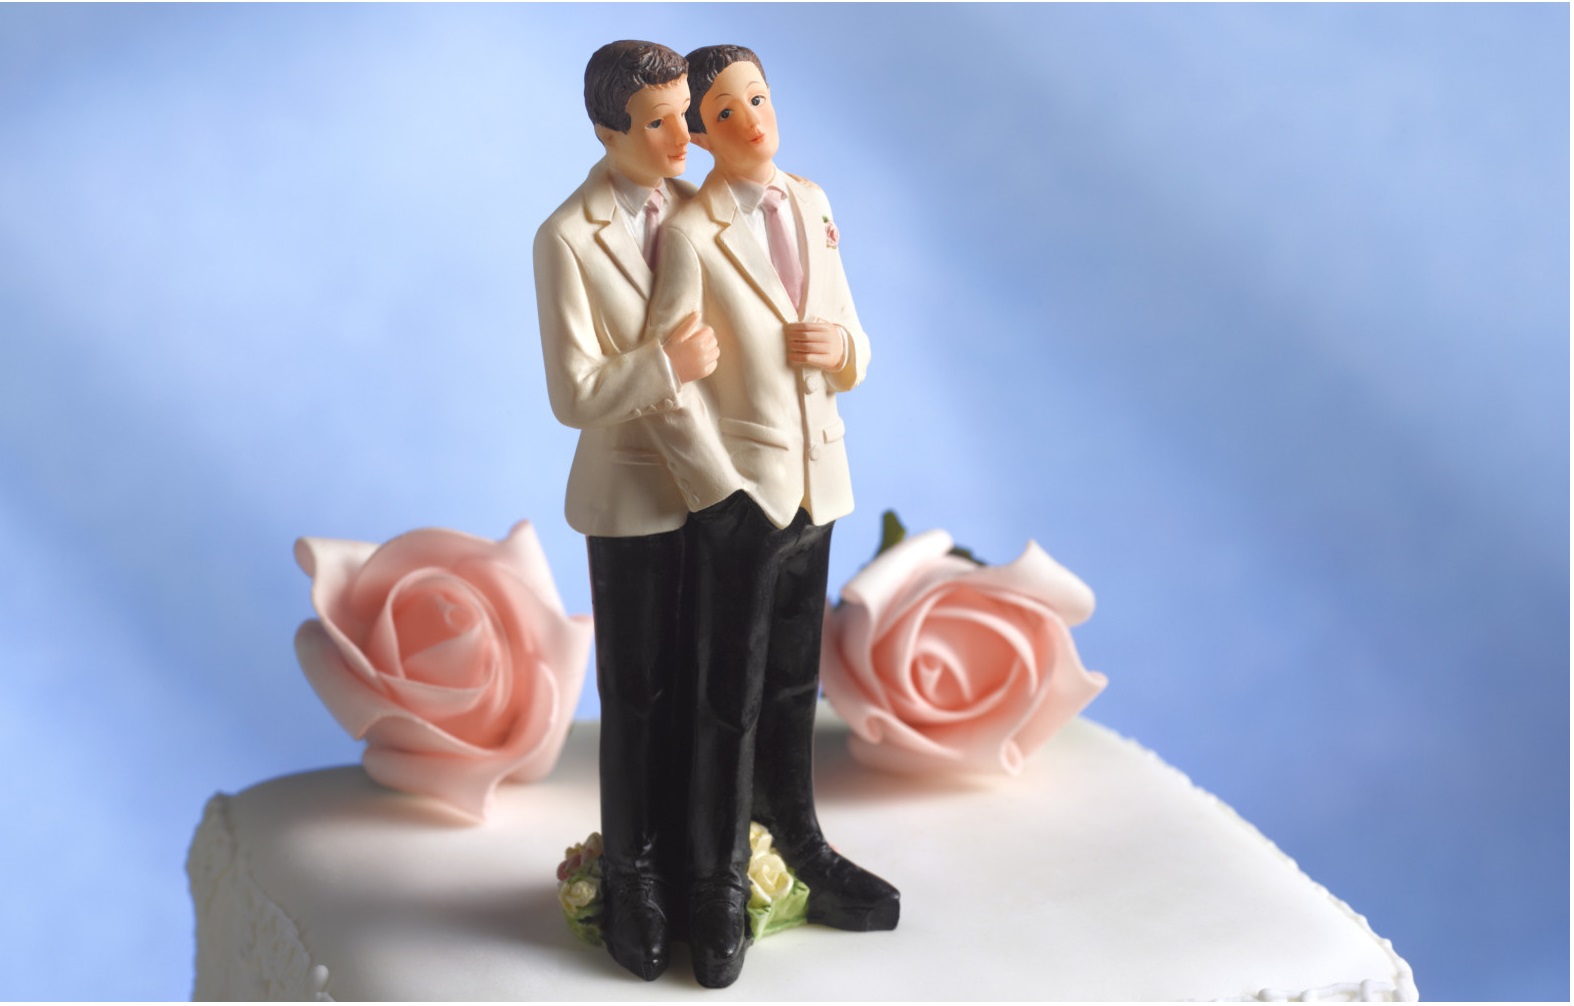 kavegay-wedding-cake